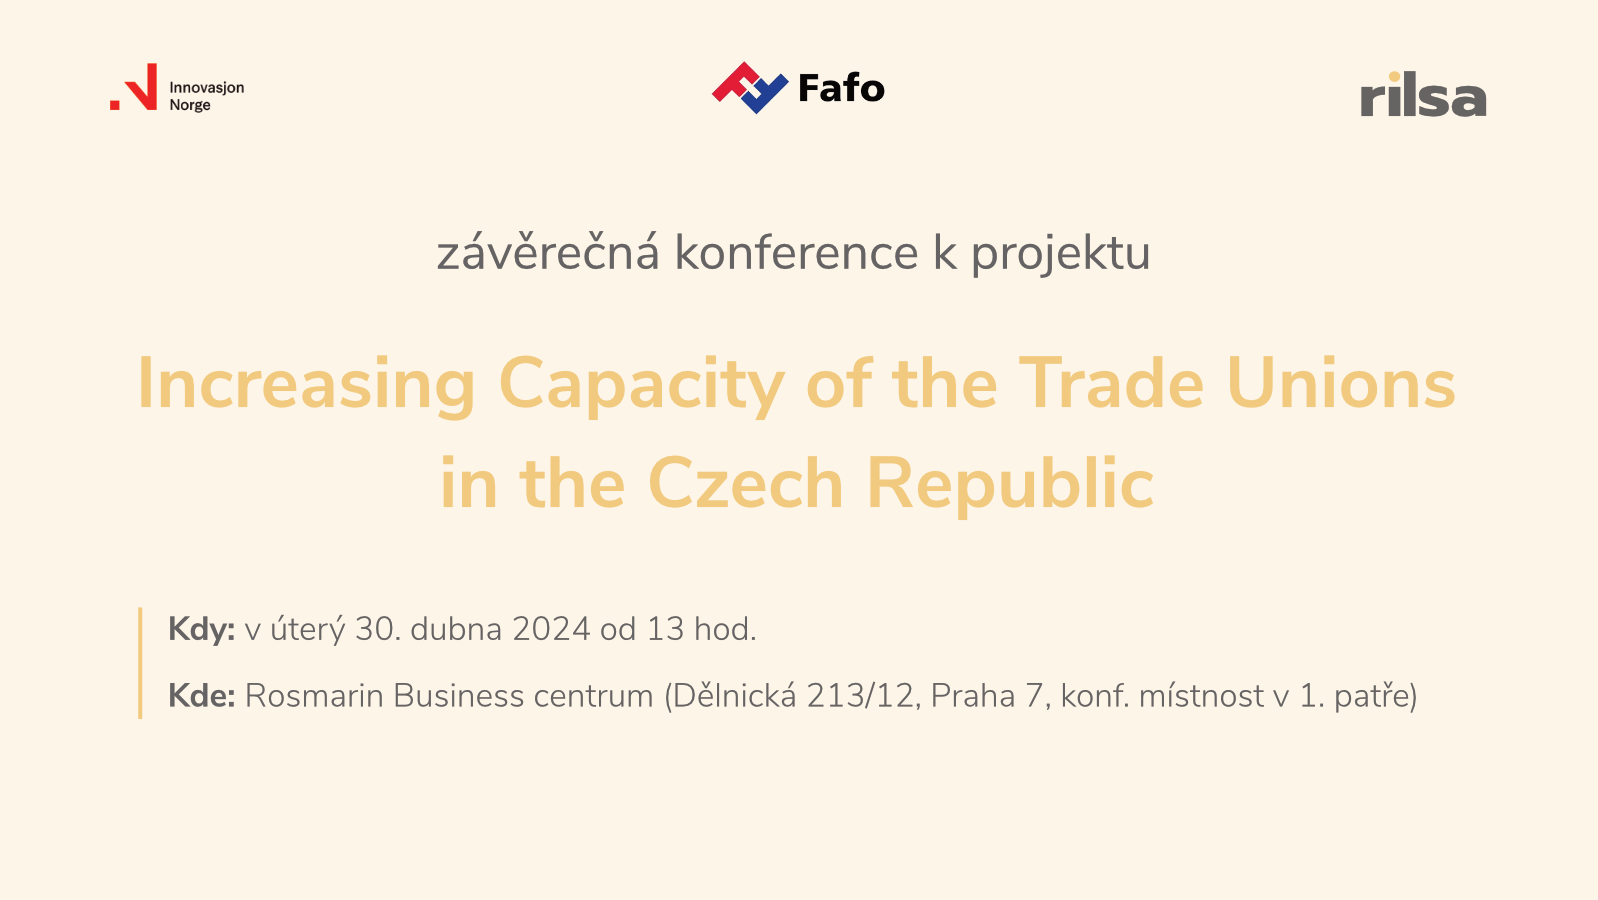 Workshop z projektu „Posílení kapacity odborových svazů v ČR“ a připomínka jeho úterní konference (30. 4.)